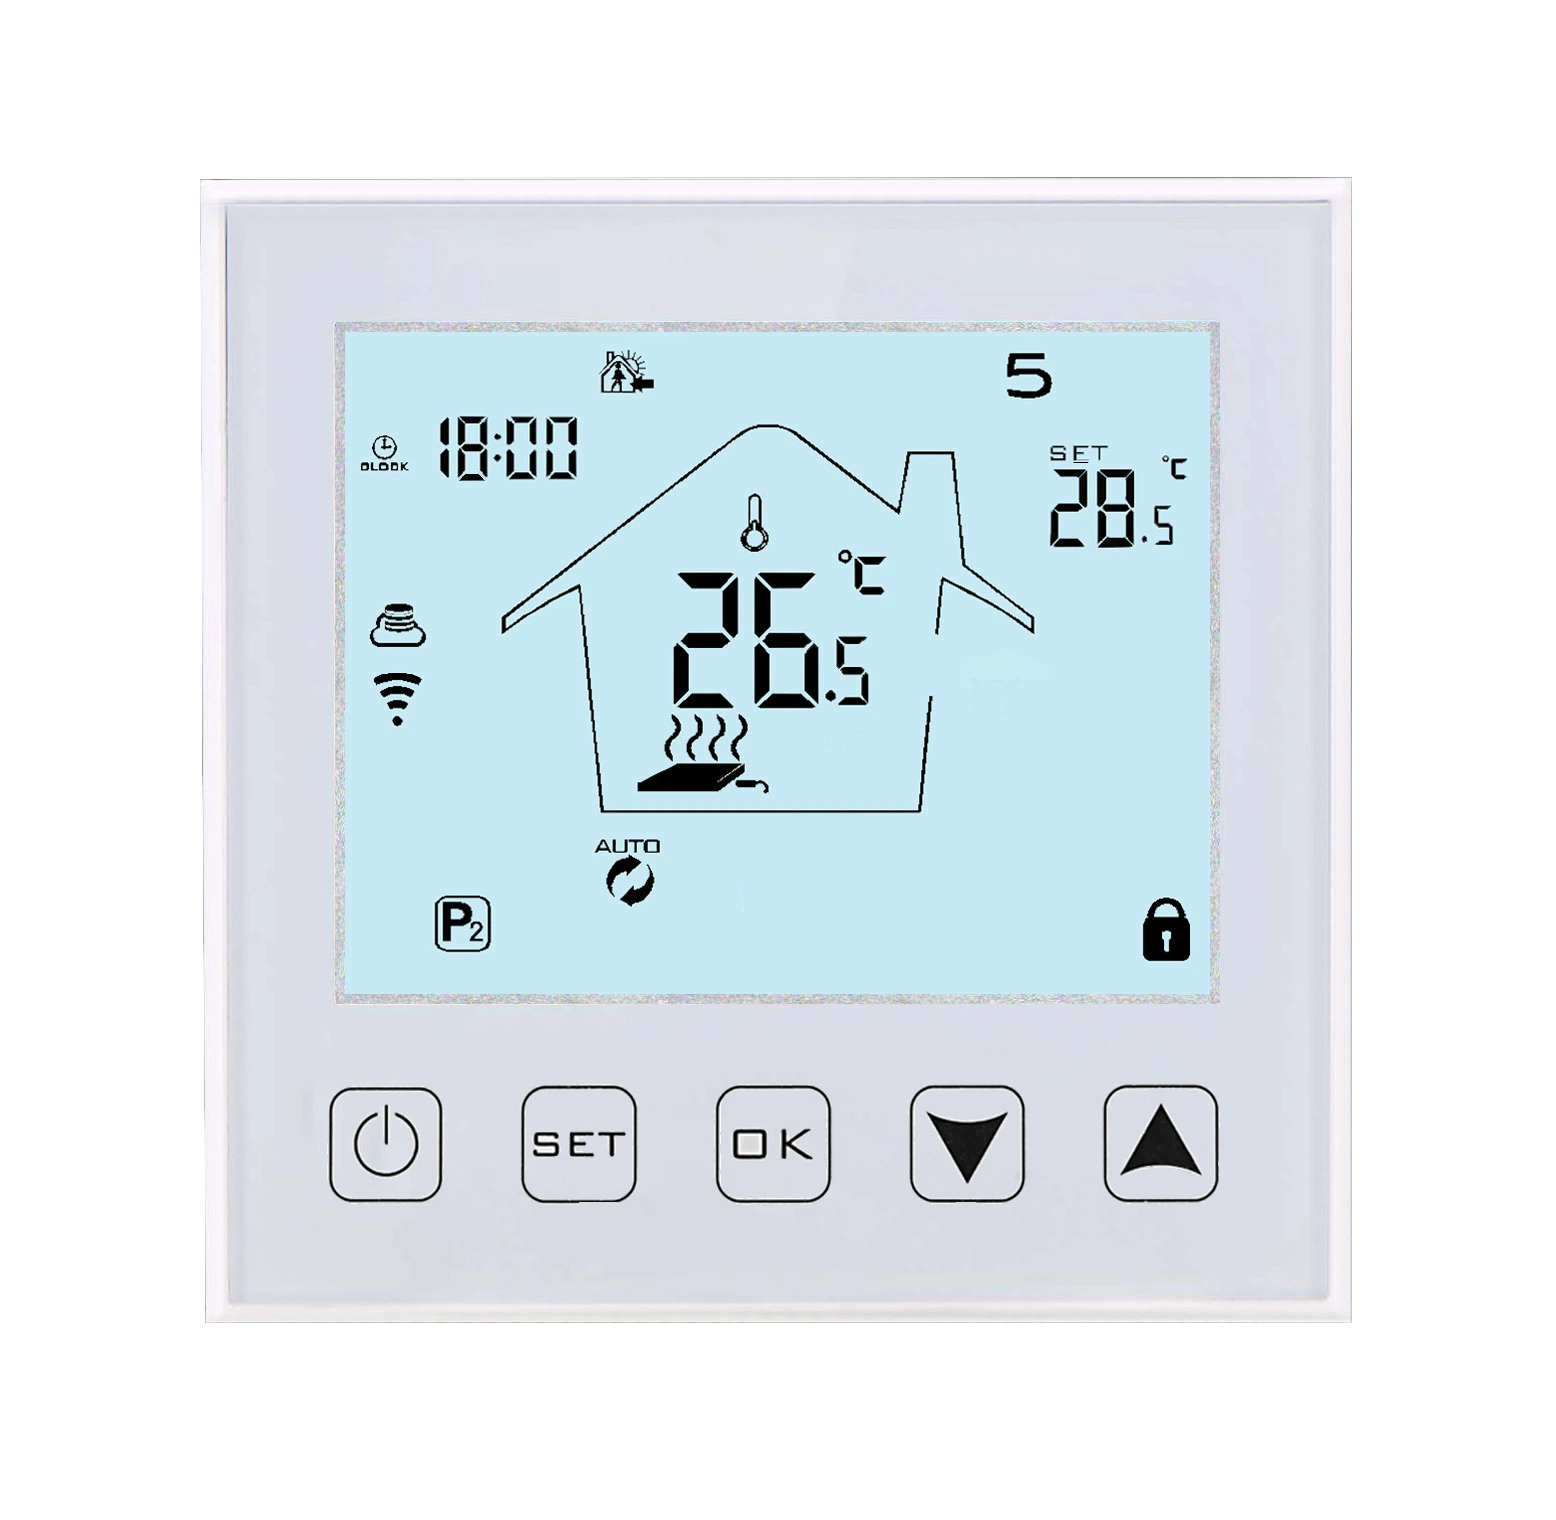 جهاز تنظيم درجة الحرارة الكهربائي 50%0FF WiFi حراسات الحرارة رقم التحكم في درجة الحرارة